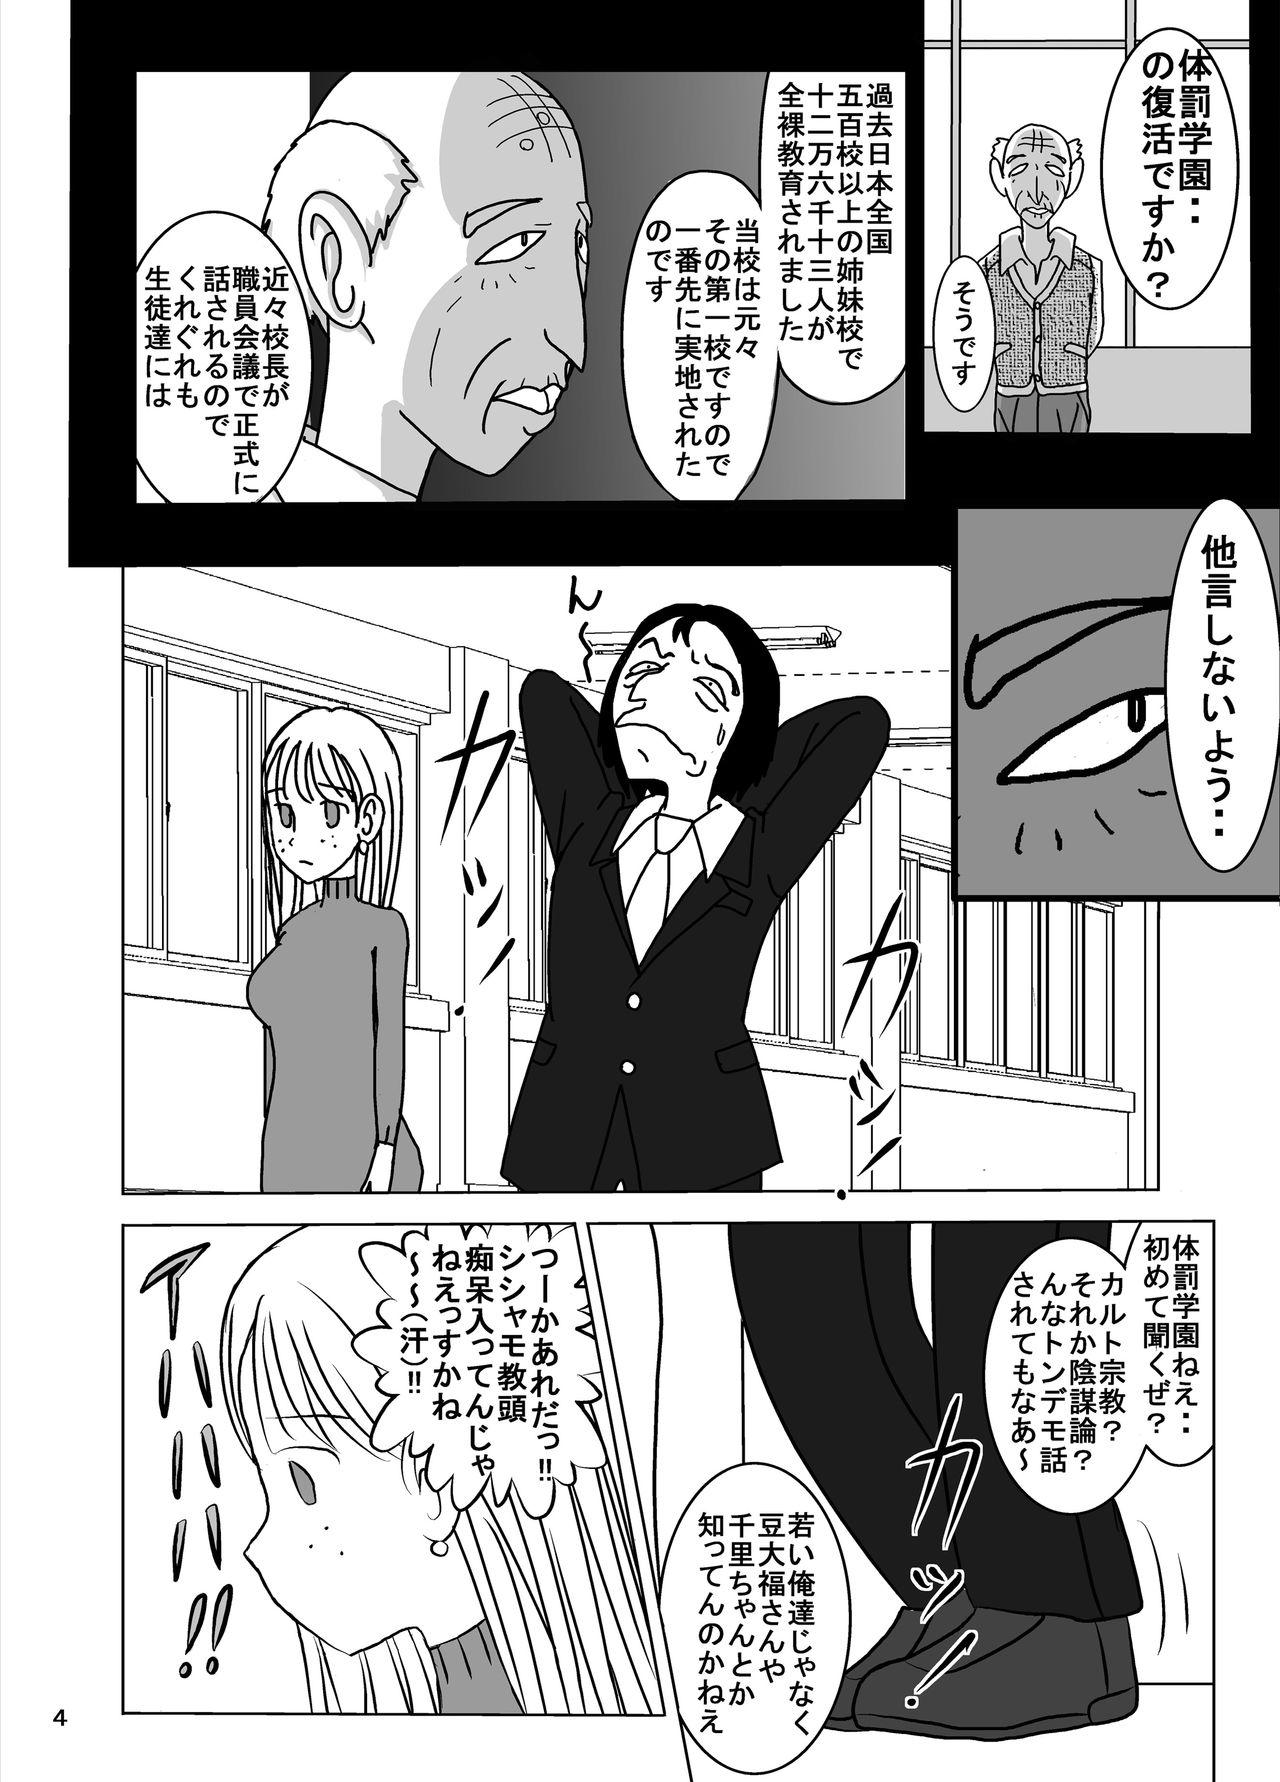 Masterbation Shukudai Wasuremashitako-san e no Zenra Kyouiku 7 - Original Boquete - Page 4